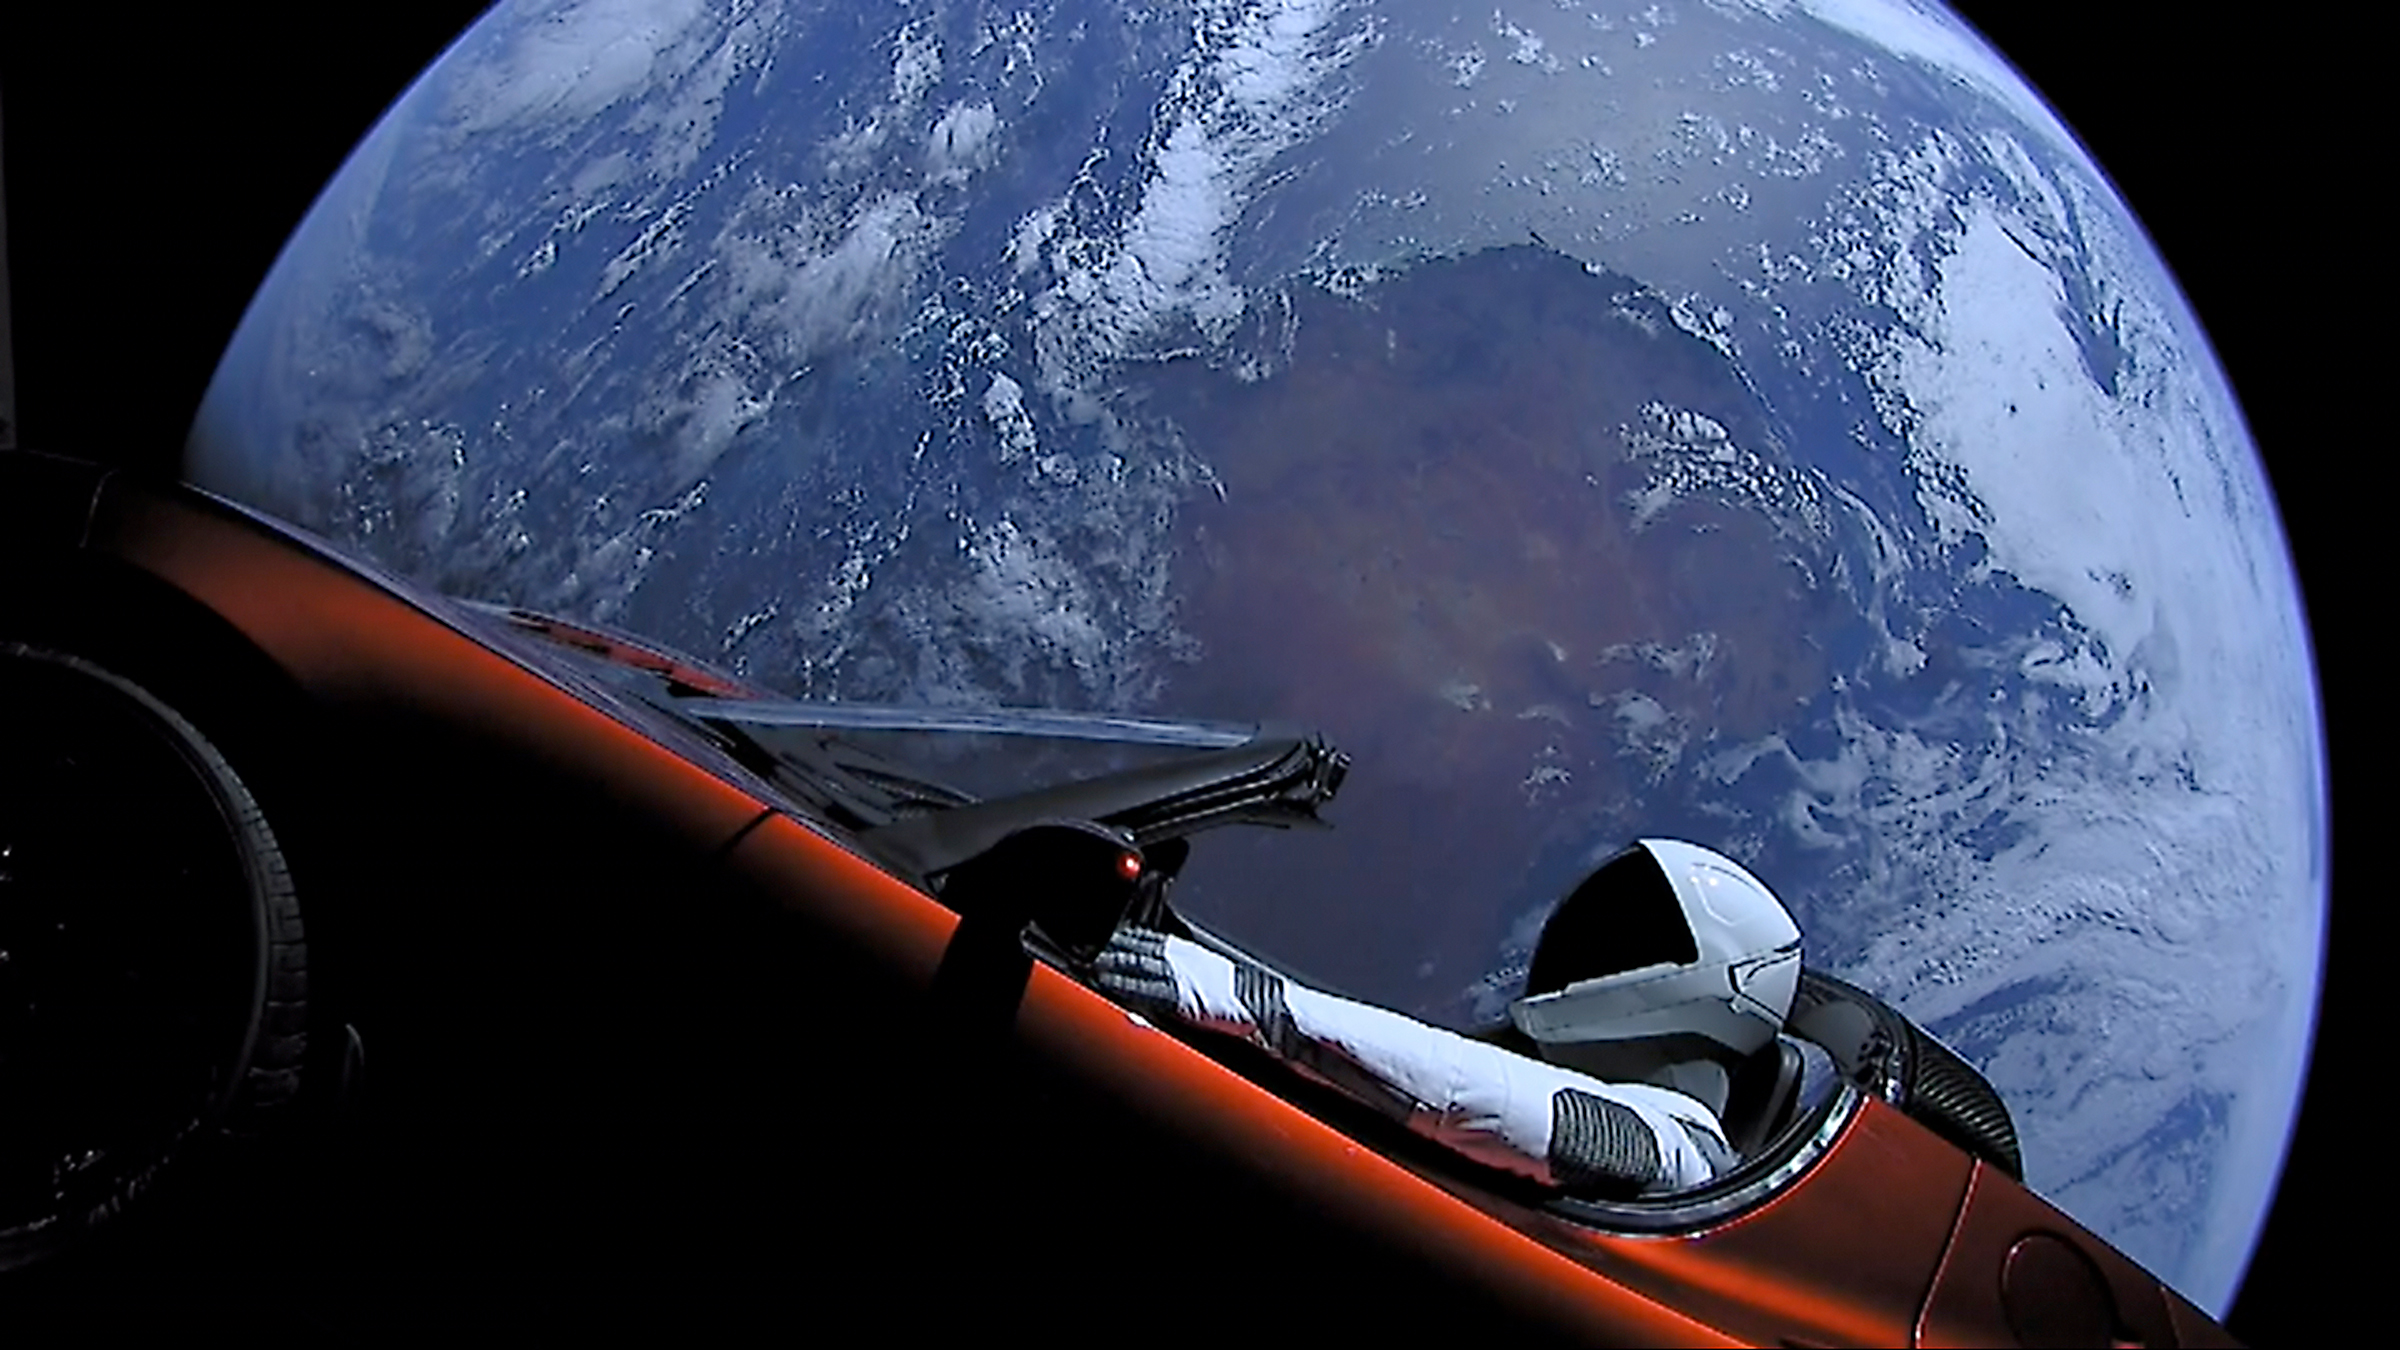 6 февраля в США провели тестовый запуск сверхтяжелой Falcon Heavy. Она стала первой ракетой такого класса, успешно запущенной в космос частной компанией SpaceX. В качестве полезной нагрузки был использован вишневый электромобиль Tesla Roadster, принадлежащий главе компании Илону Маску. За руль посадили манекен, одетый в скафандр. При старте в автомобиле играла песня Дэвида Боуи Space Oddity. Машину вывели на орбиту
